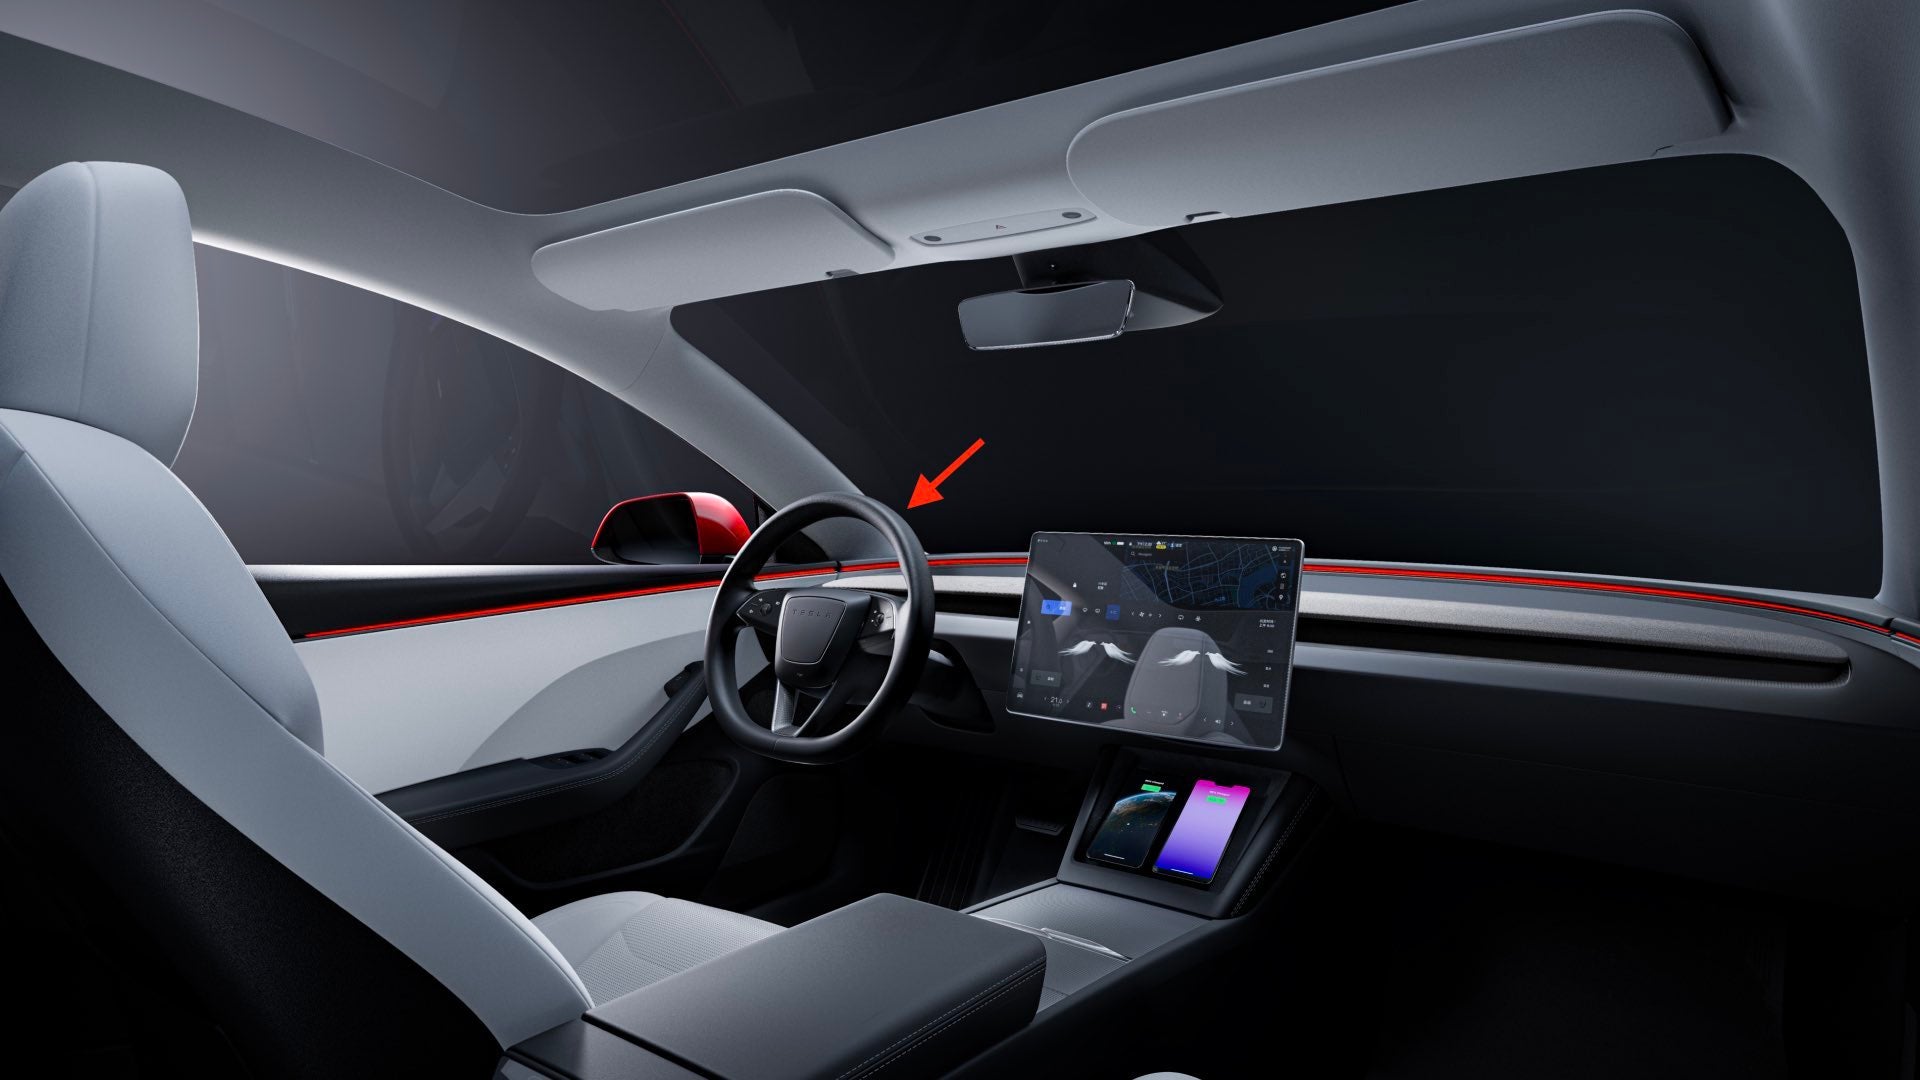 Neue Styles Volle Set Schwarz Rot Sitzbezüge Für Tesla Modell 3 Y